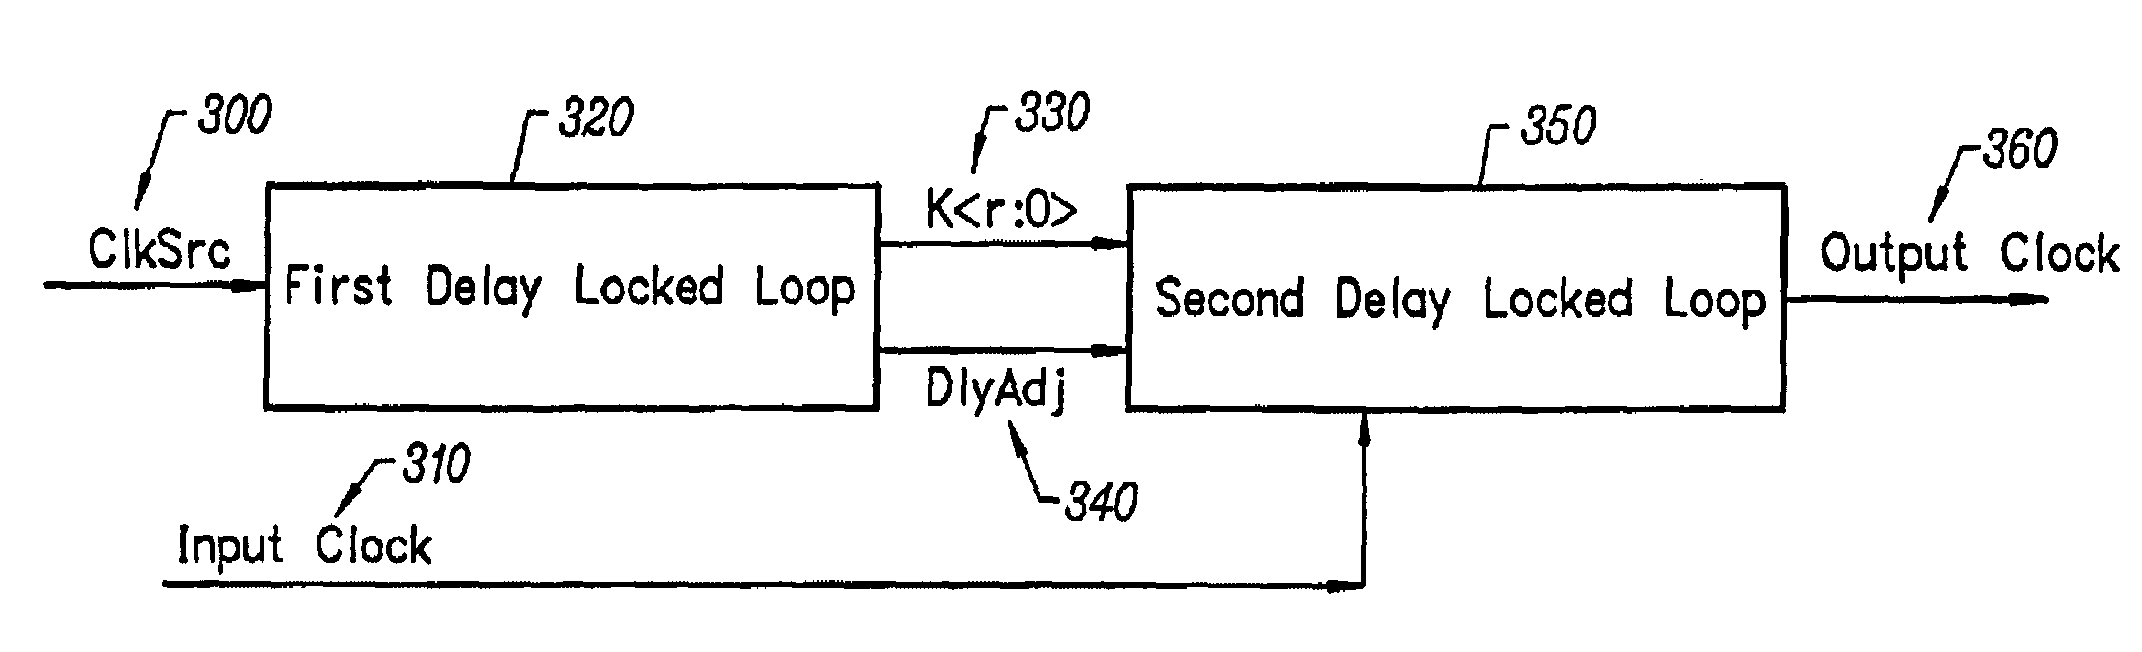 Delay locked loop circuitry for clock delay adjustment